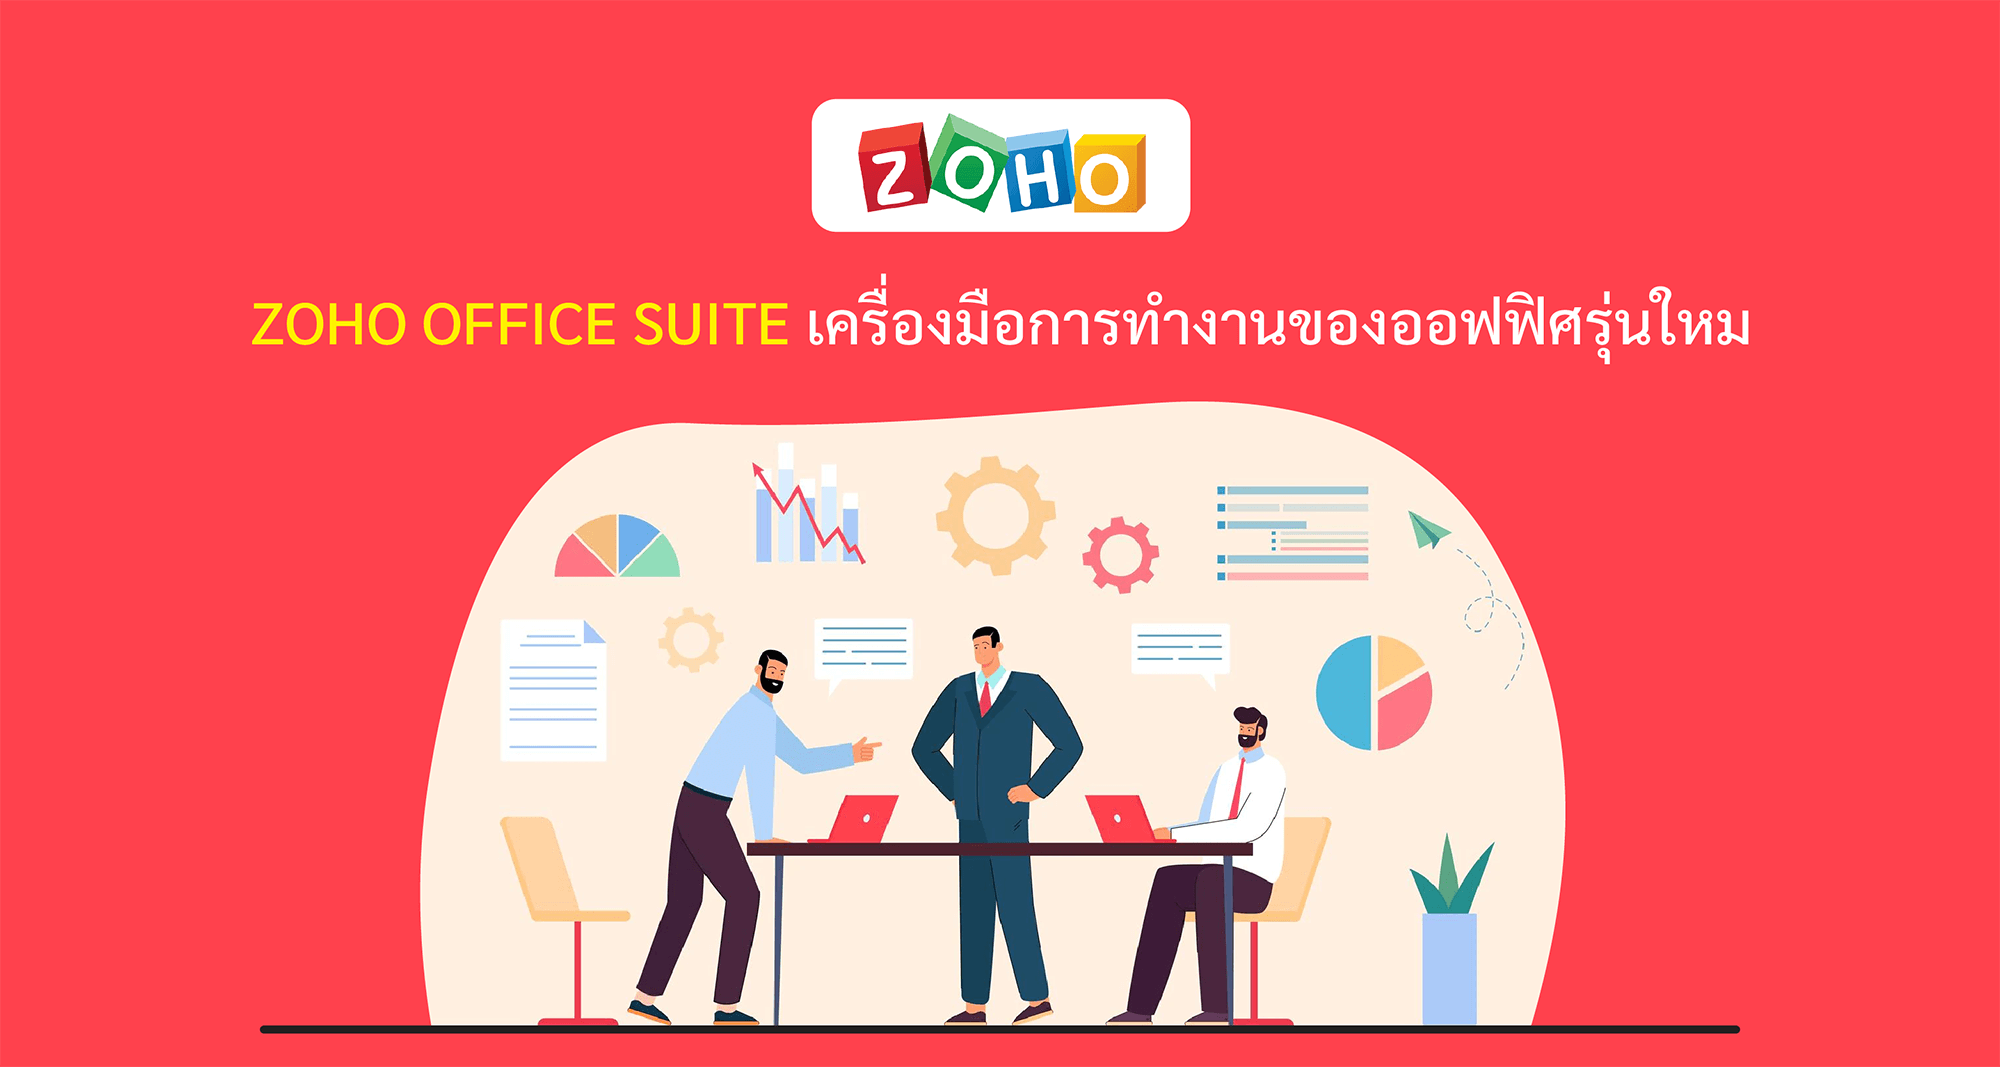 Zoho Office Suite เครื่องมือการทำงานของออฟฟิศรุ่นใหม่